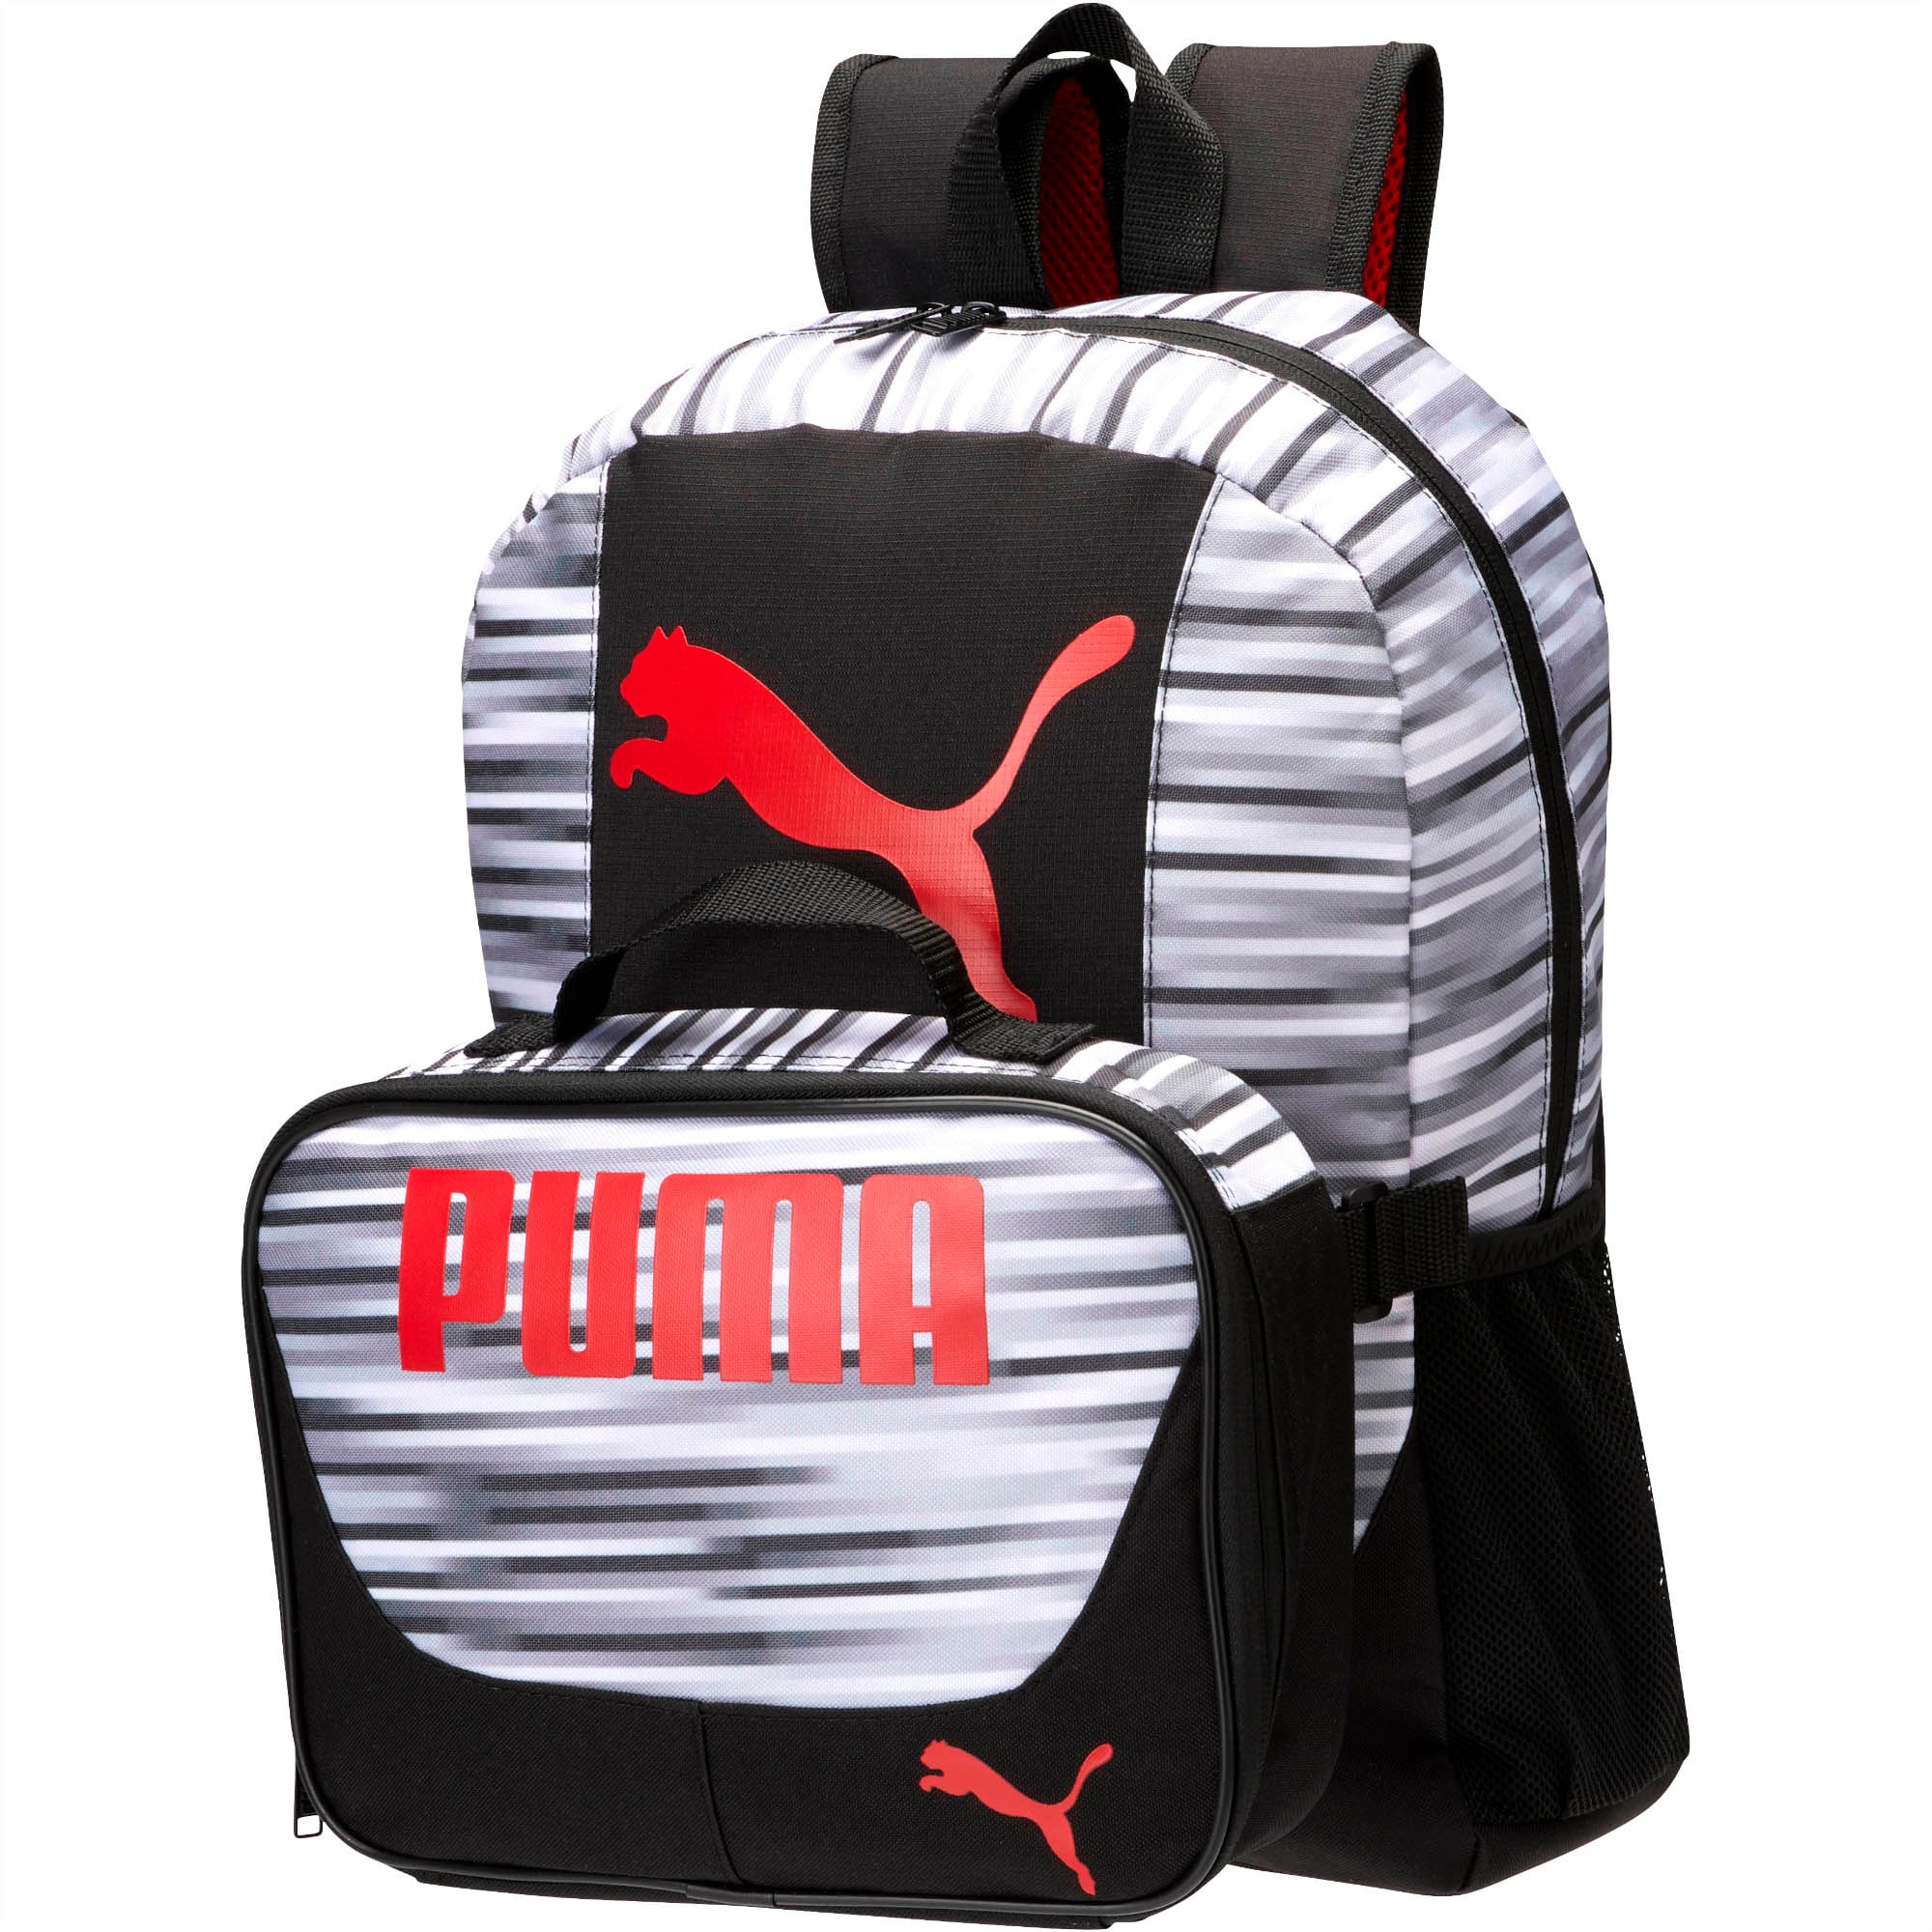 puma backpack and lunchbox